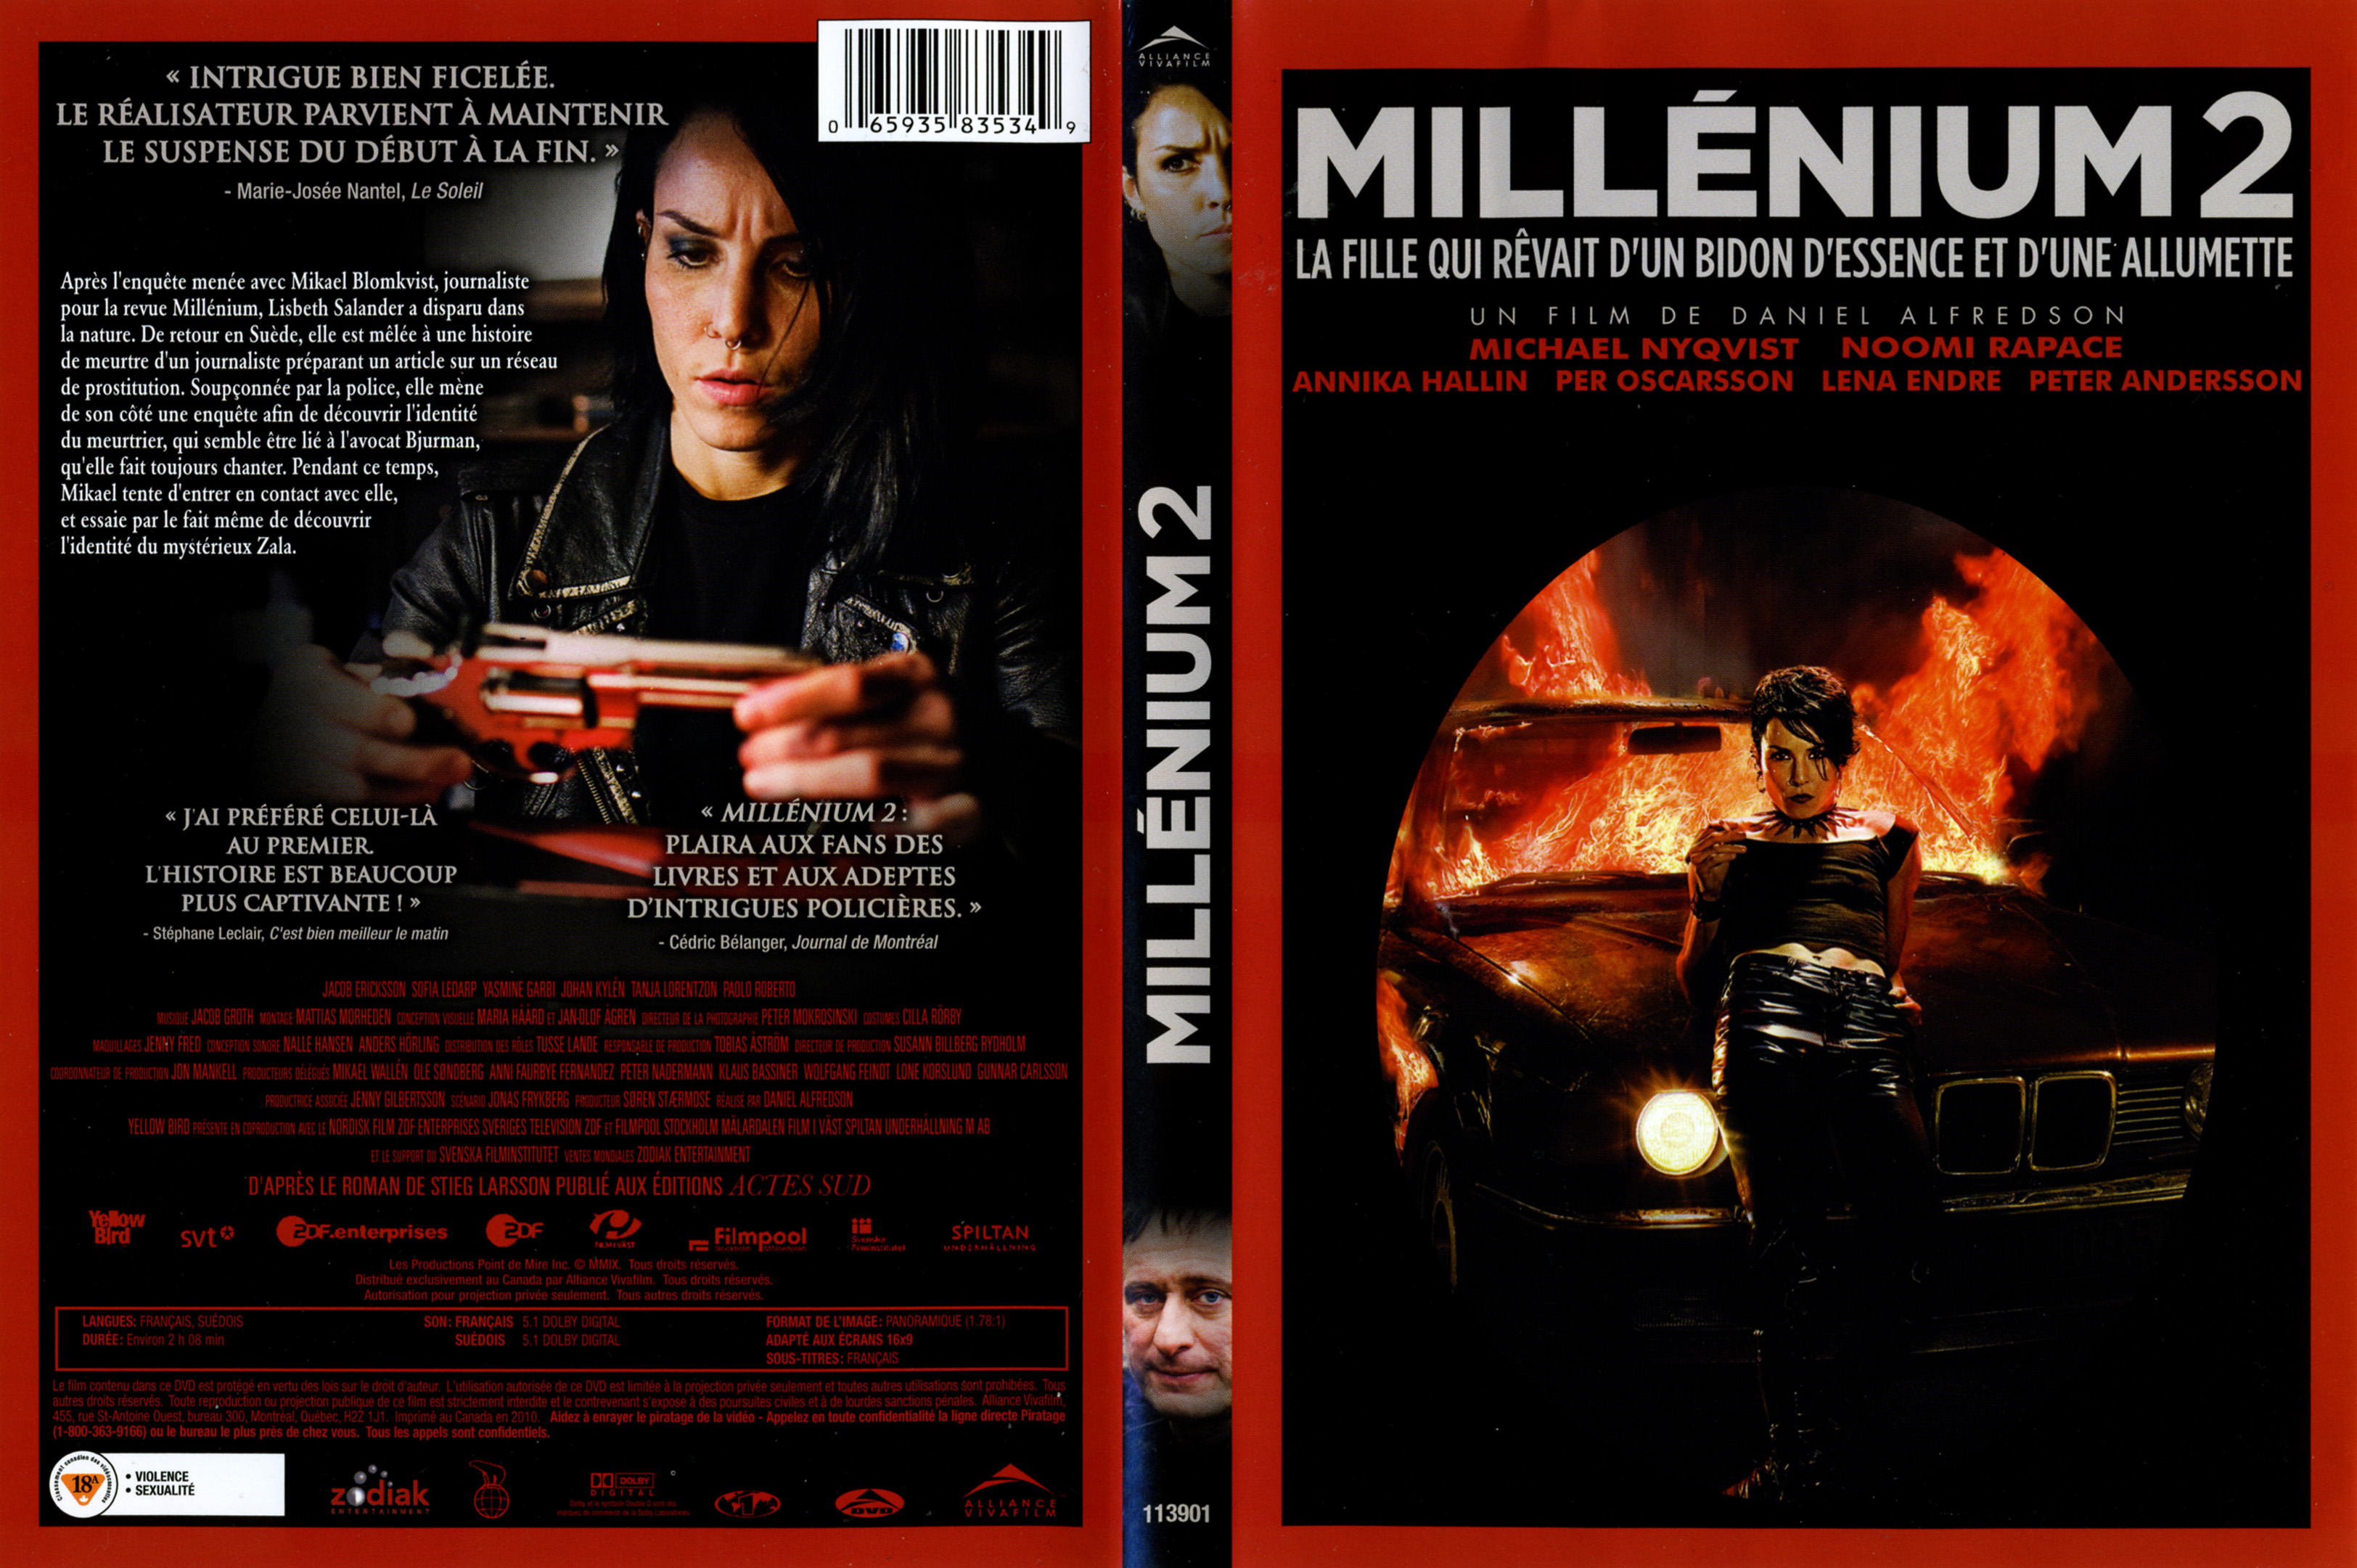 Jaquette DVD Millenium 2 La fille qui revait d un bidon d